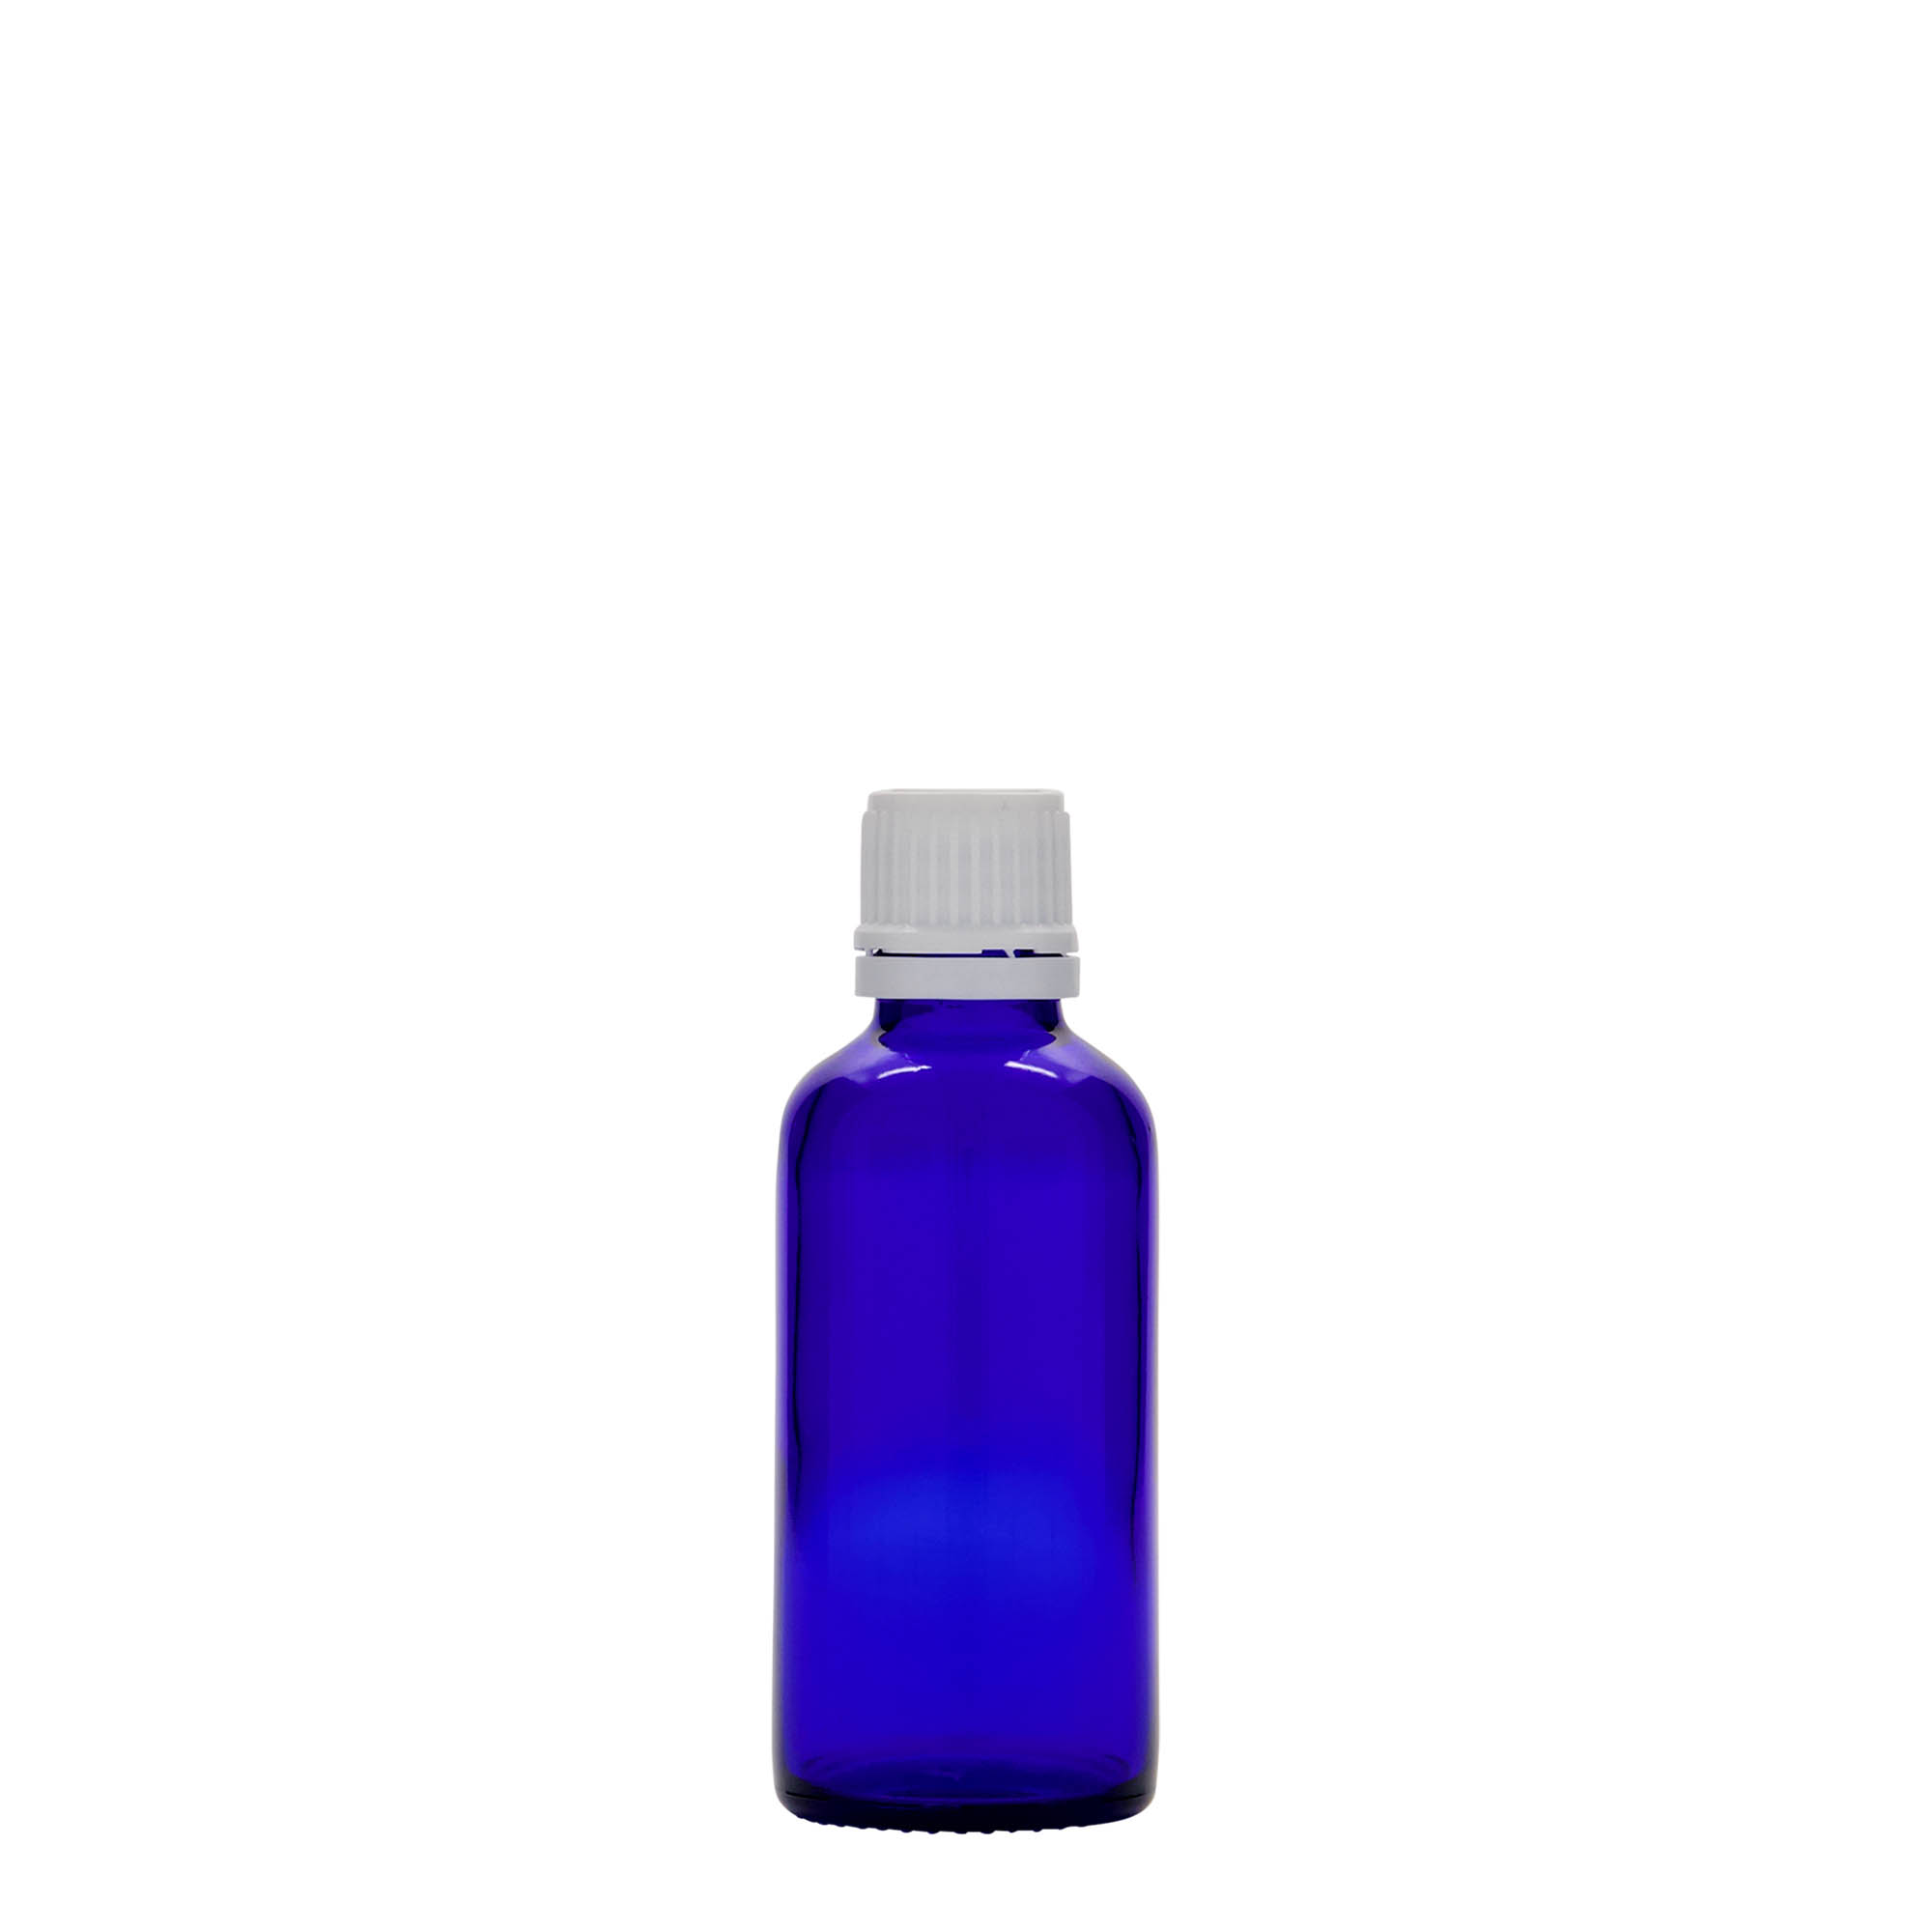 50 ml medicine bottle, glass, royal blue, closure: DIN 18